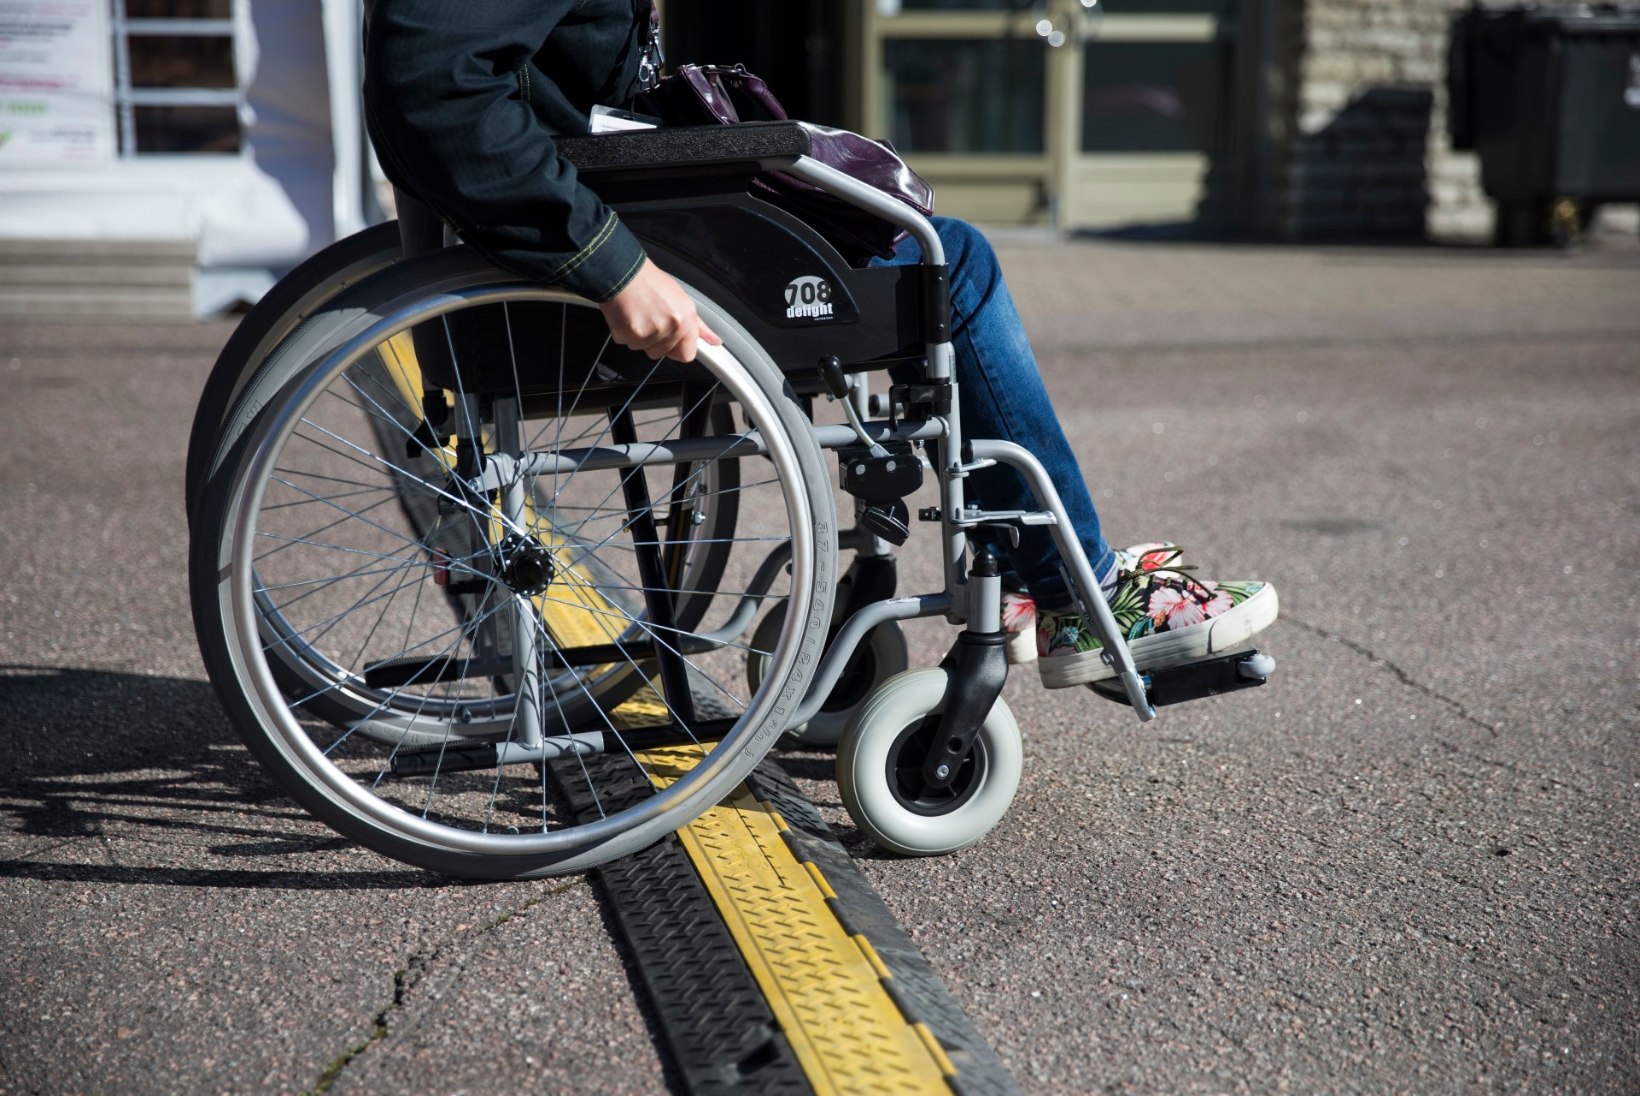 Avalikud ehitised peavad olema ligipääsetavad puuetega inimestele